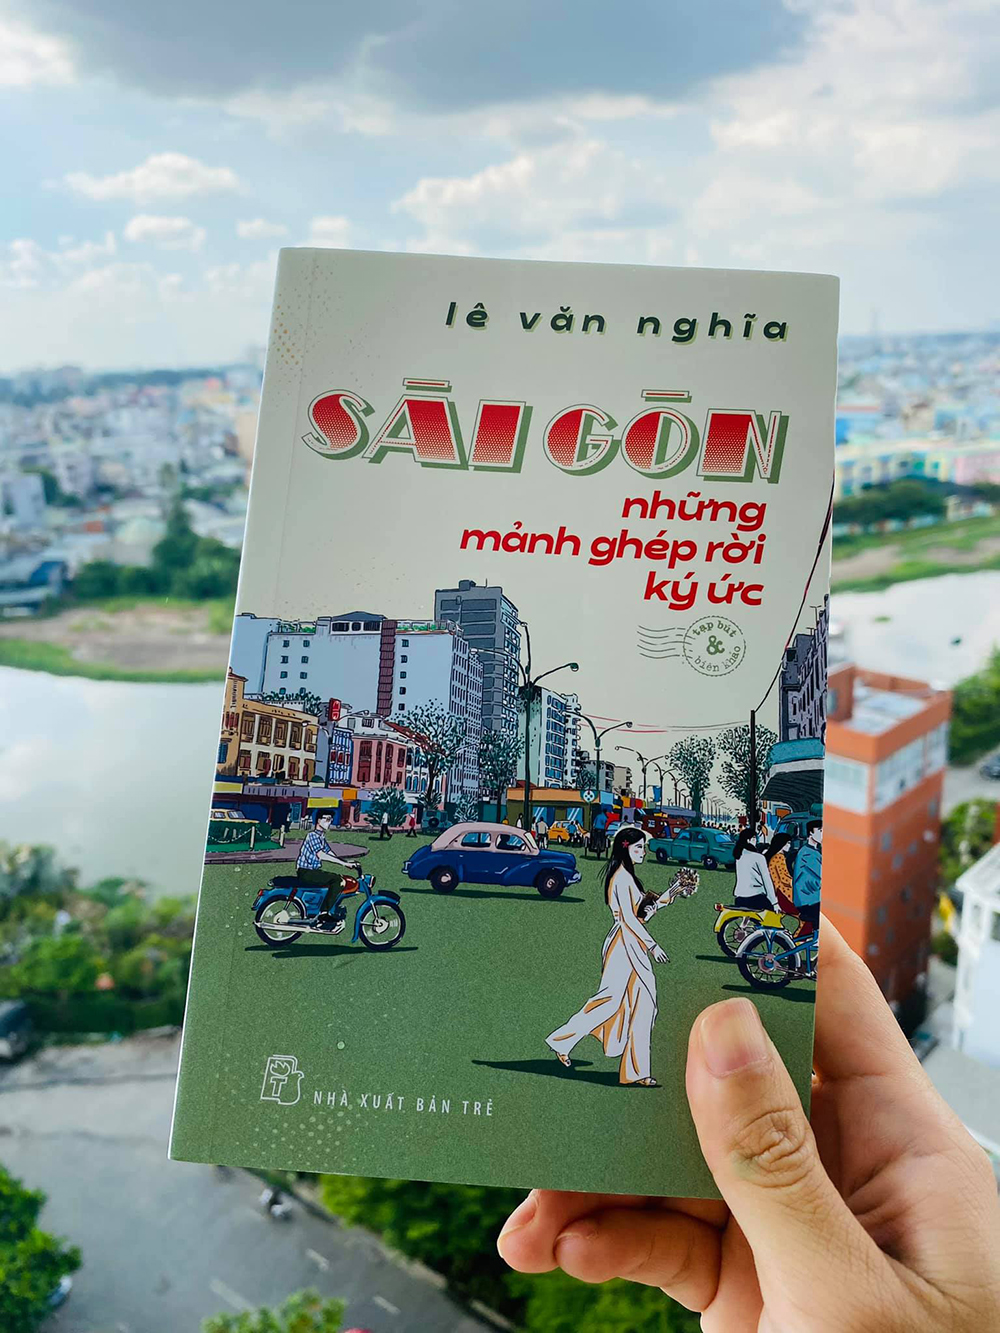 Bìa sách Sài Gòn, những mảnh ghép rời ký ức. Ảnh: NXB Trẻ